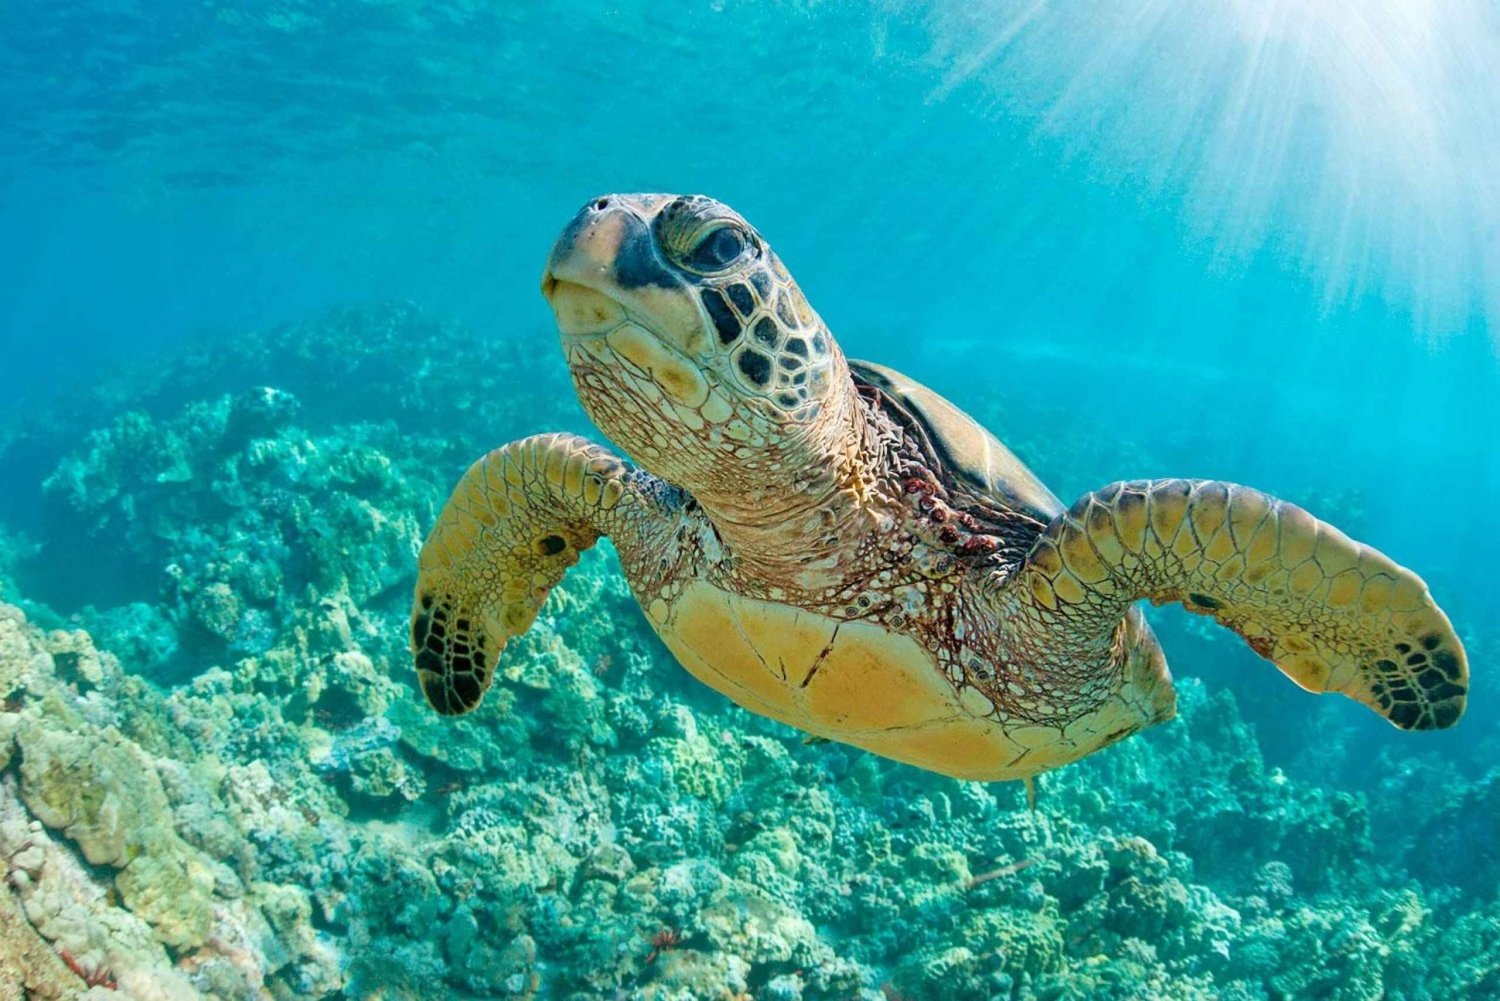 Från Piura || Utflykt till Mancora + simning med sköldpaddor